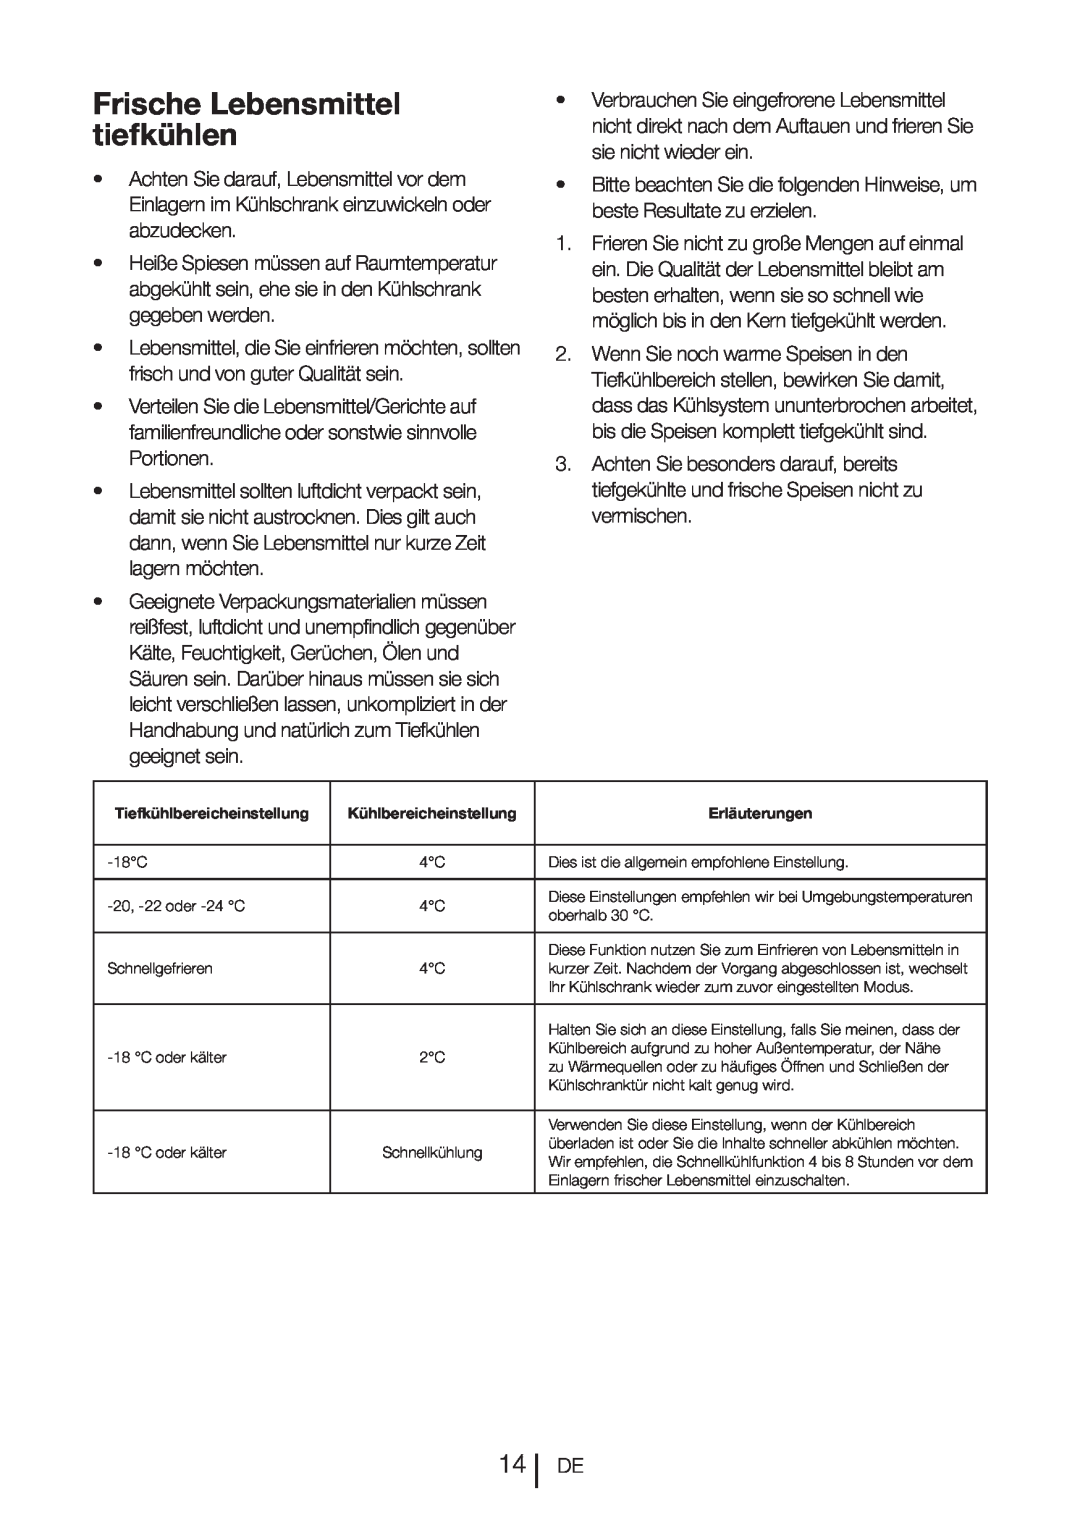 Blomberg DND 9977 PD manual Frische Lebensmittel tiefkühlen 